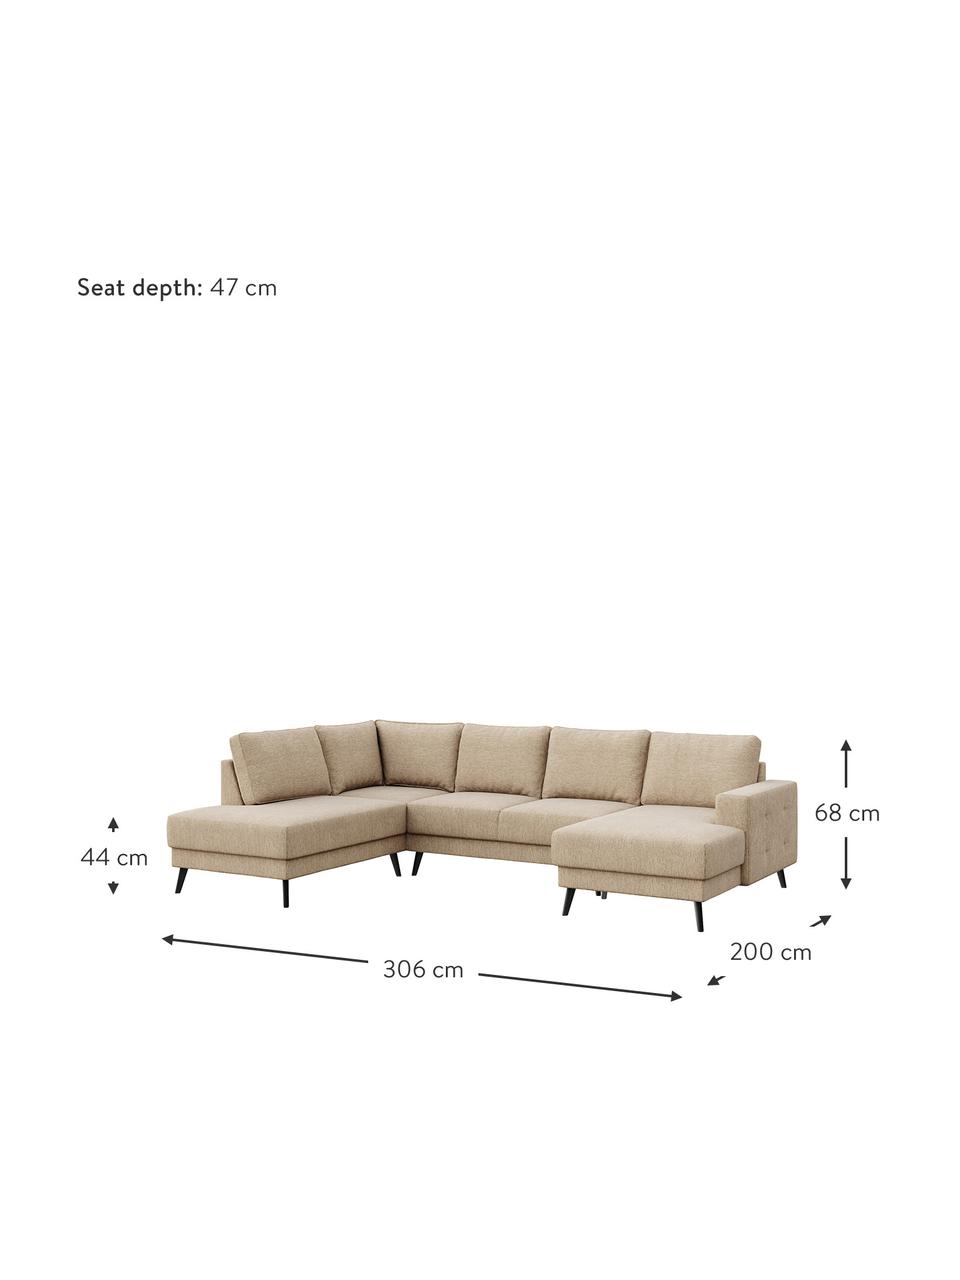 Sofa narożna XL Fynn (5-osobowa), Tapicerka: 100% aksamit poliestrowy , Nogi: drewno lakierowane, Beżowy, S 306 x G 200 cm, lewostronna